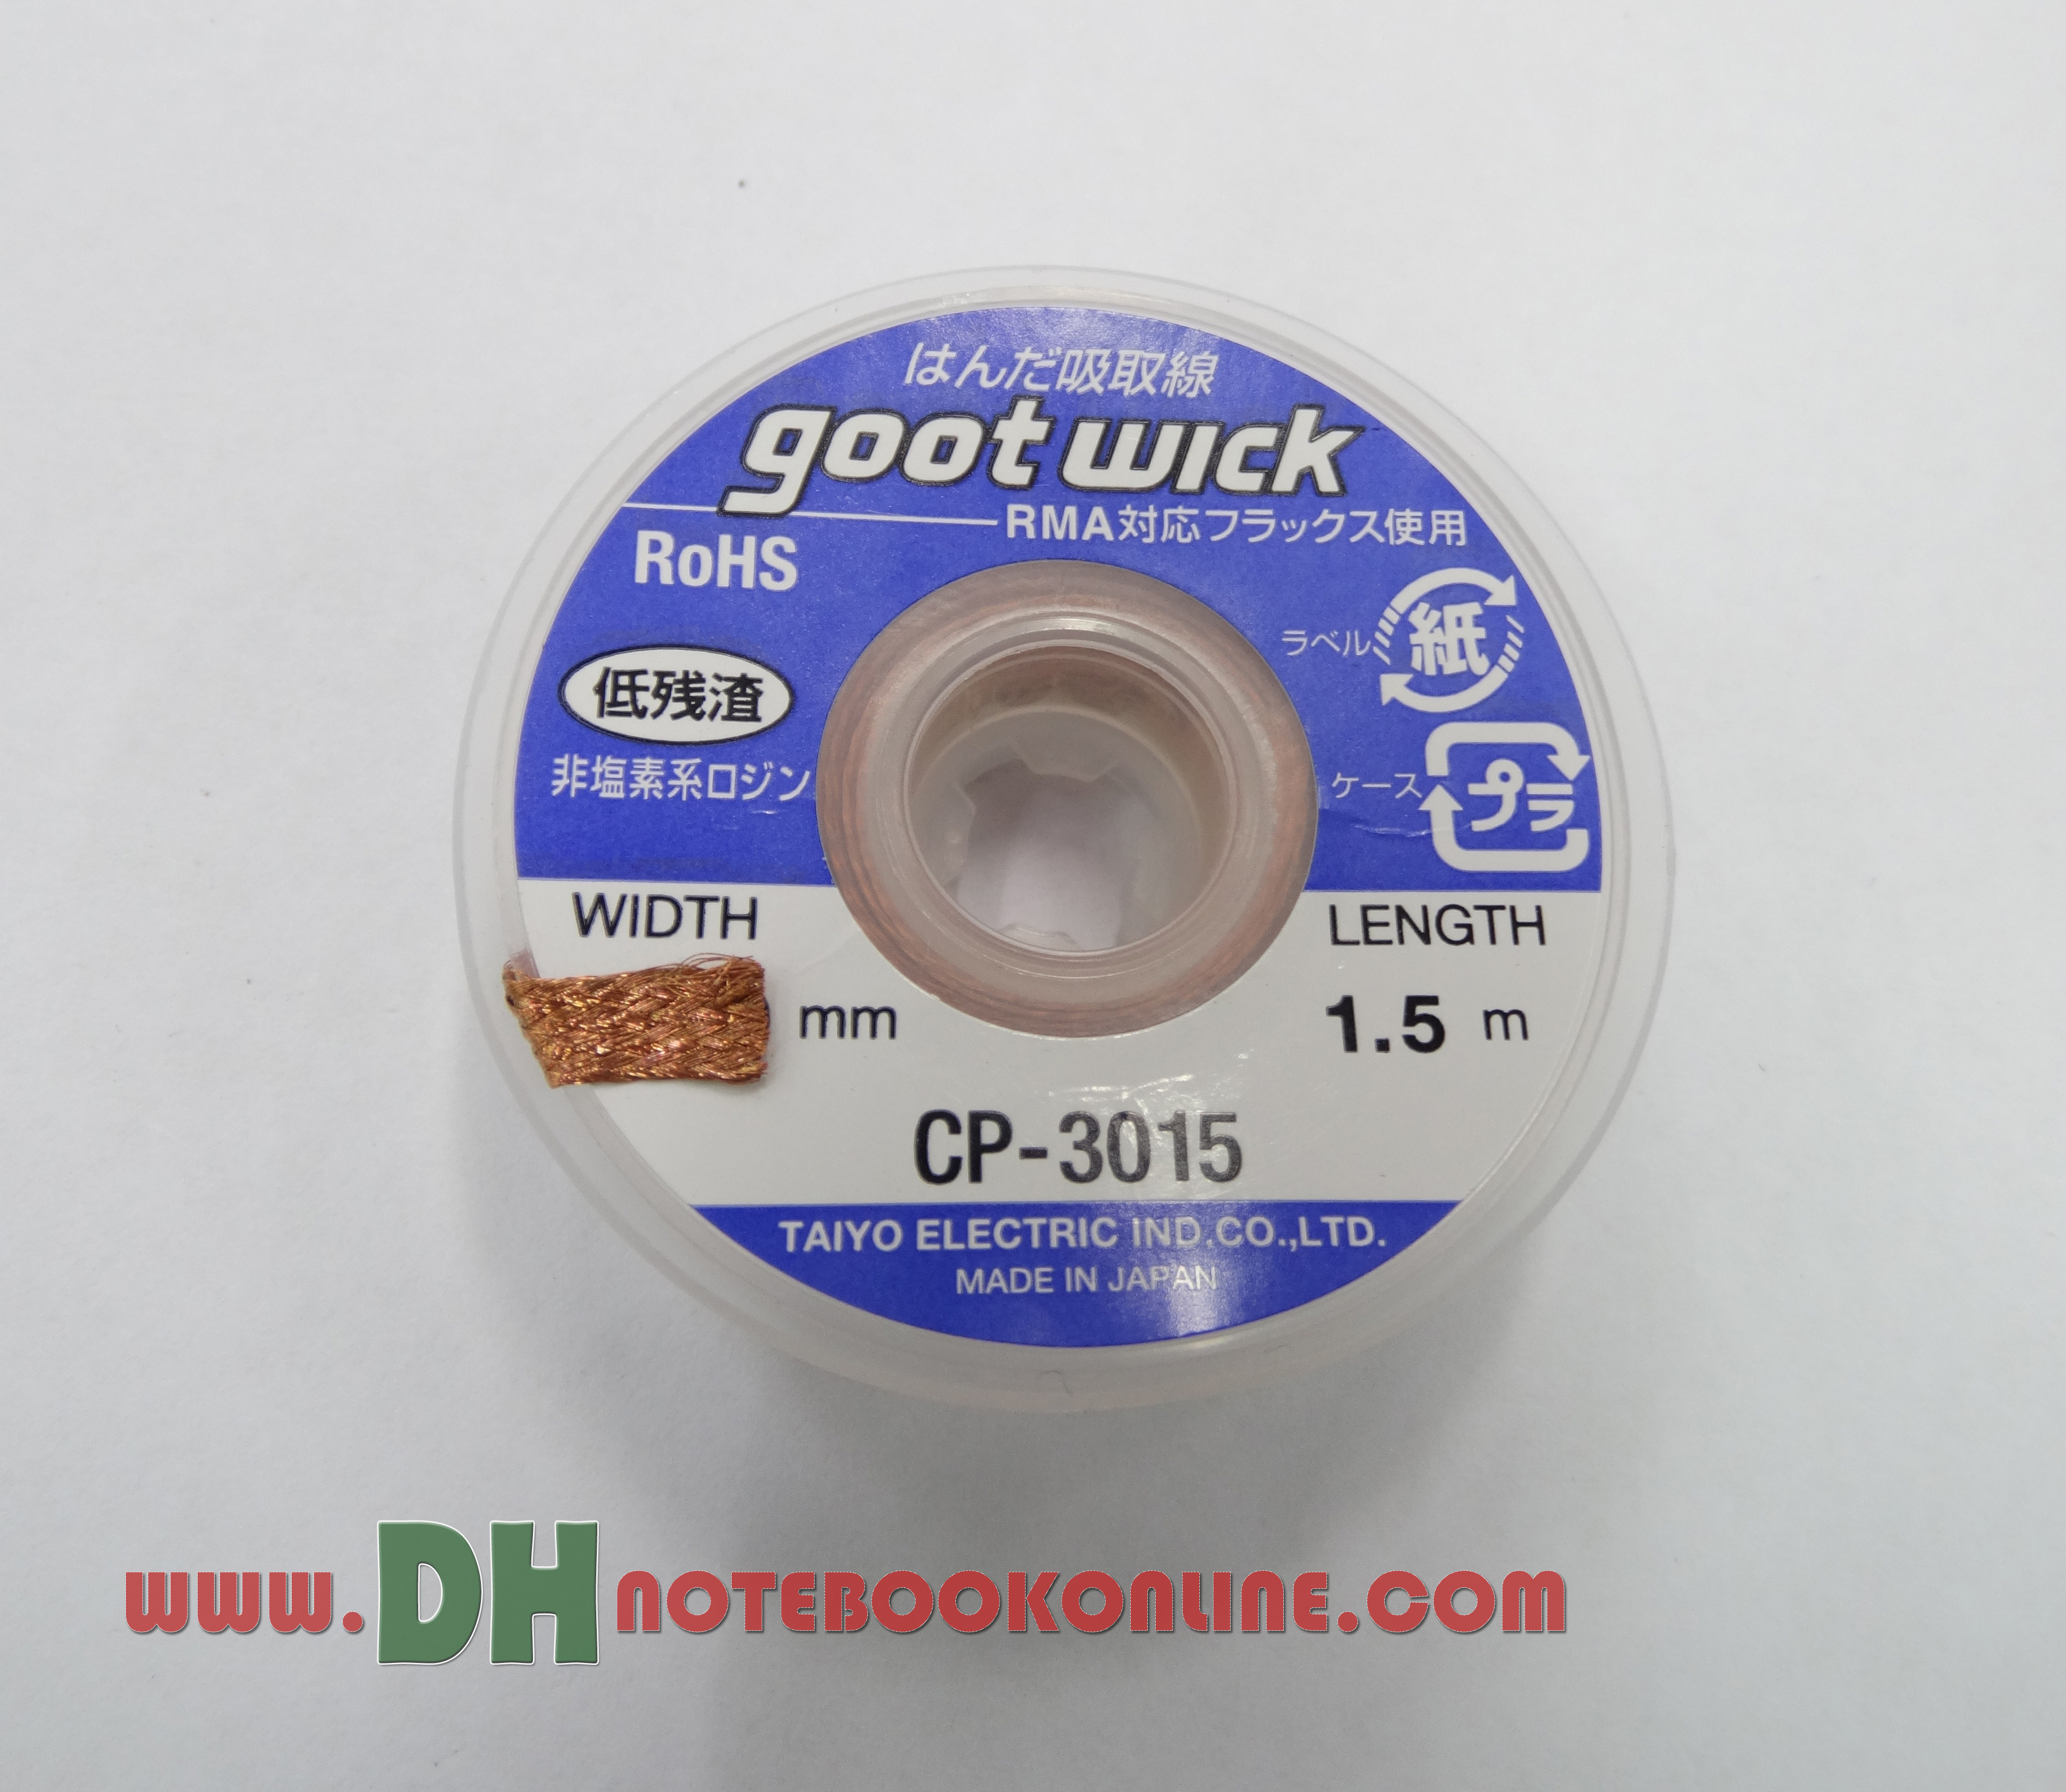 ลวดซับตะกั่ว Goot wick CP-3015